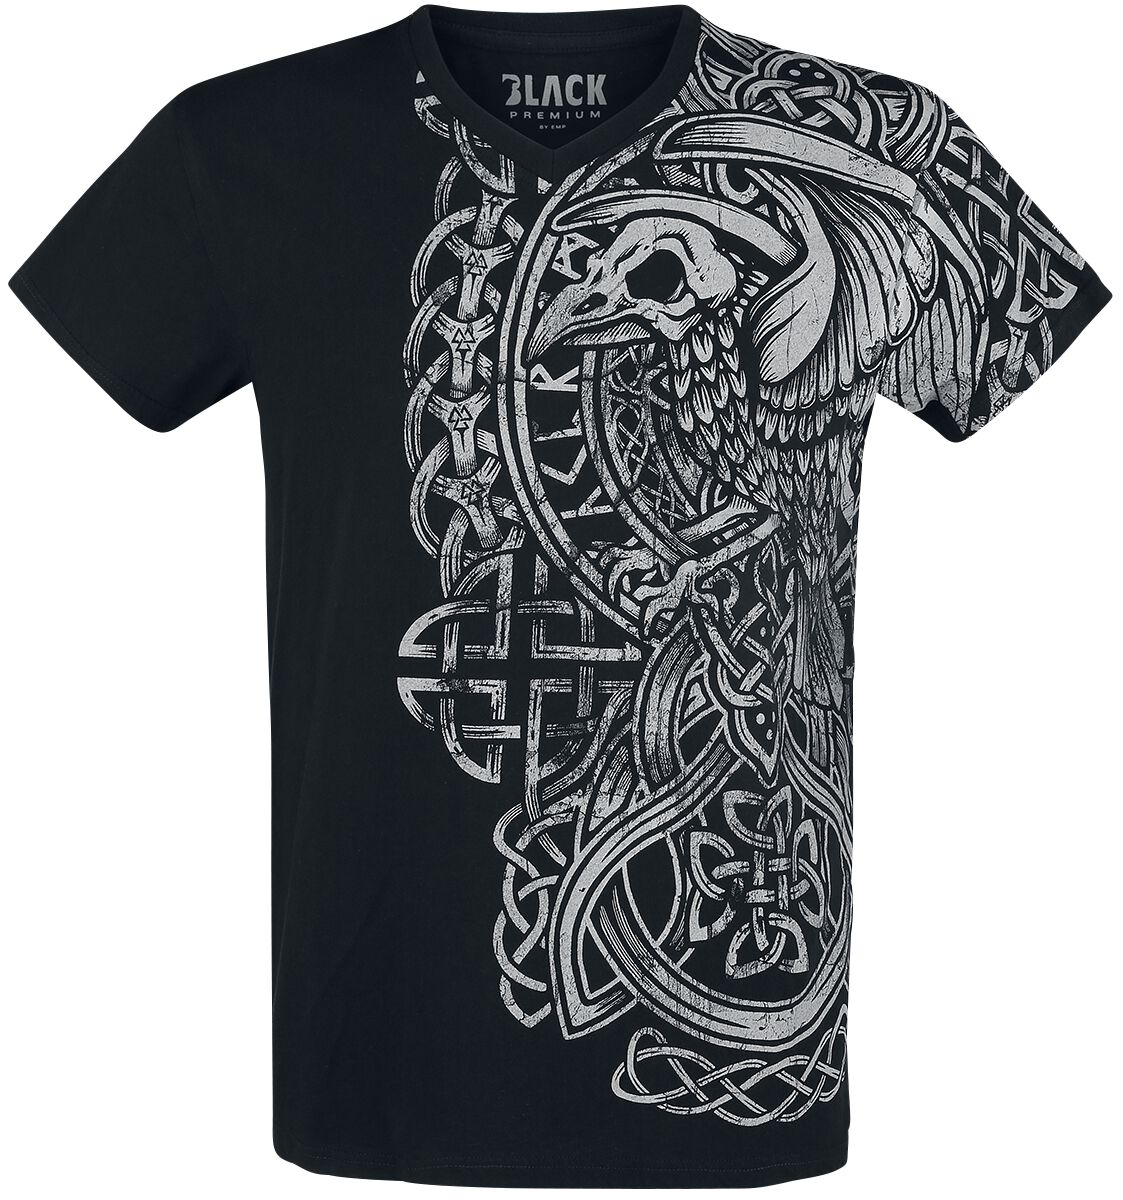 Black Premium by EMP schwarzes T-Shirt mit Print und V-Ausschnitt T-Shirt schwarz in 3XL